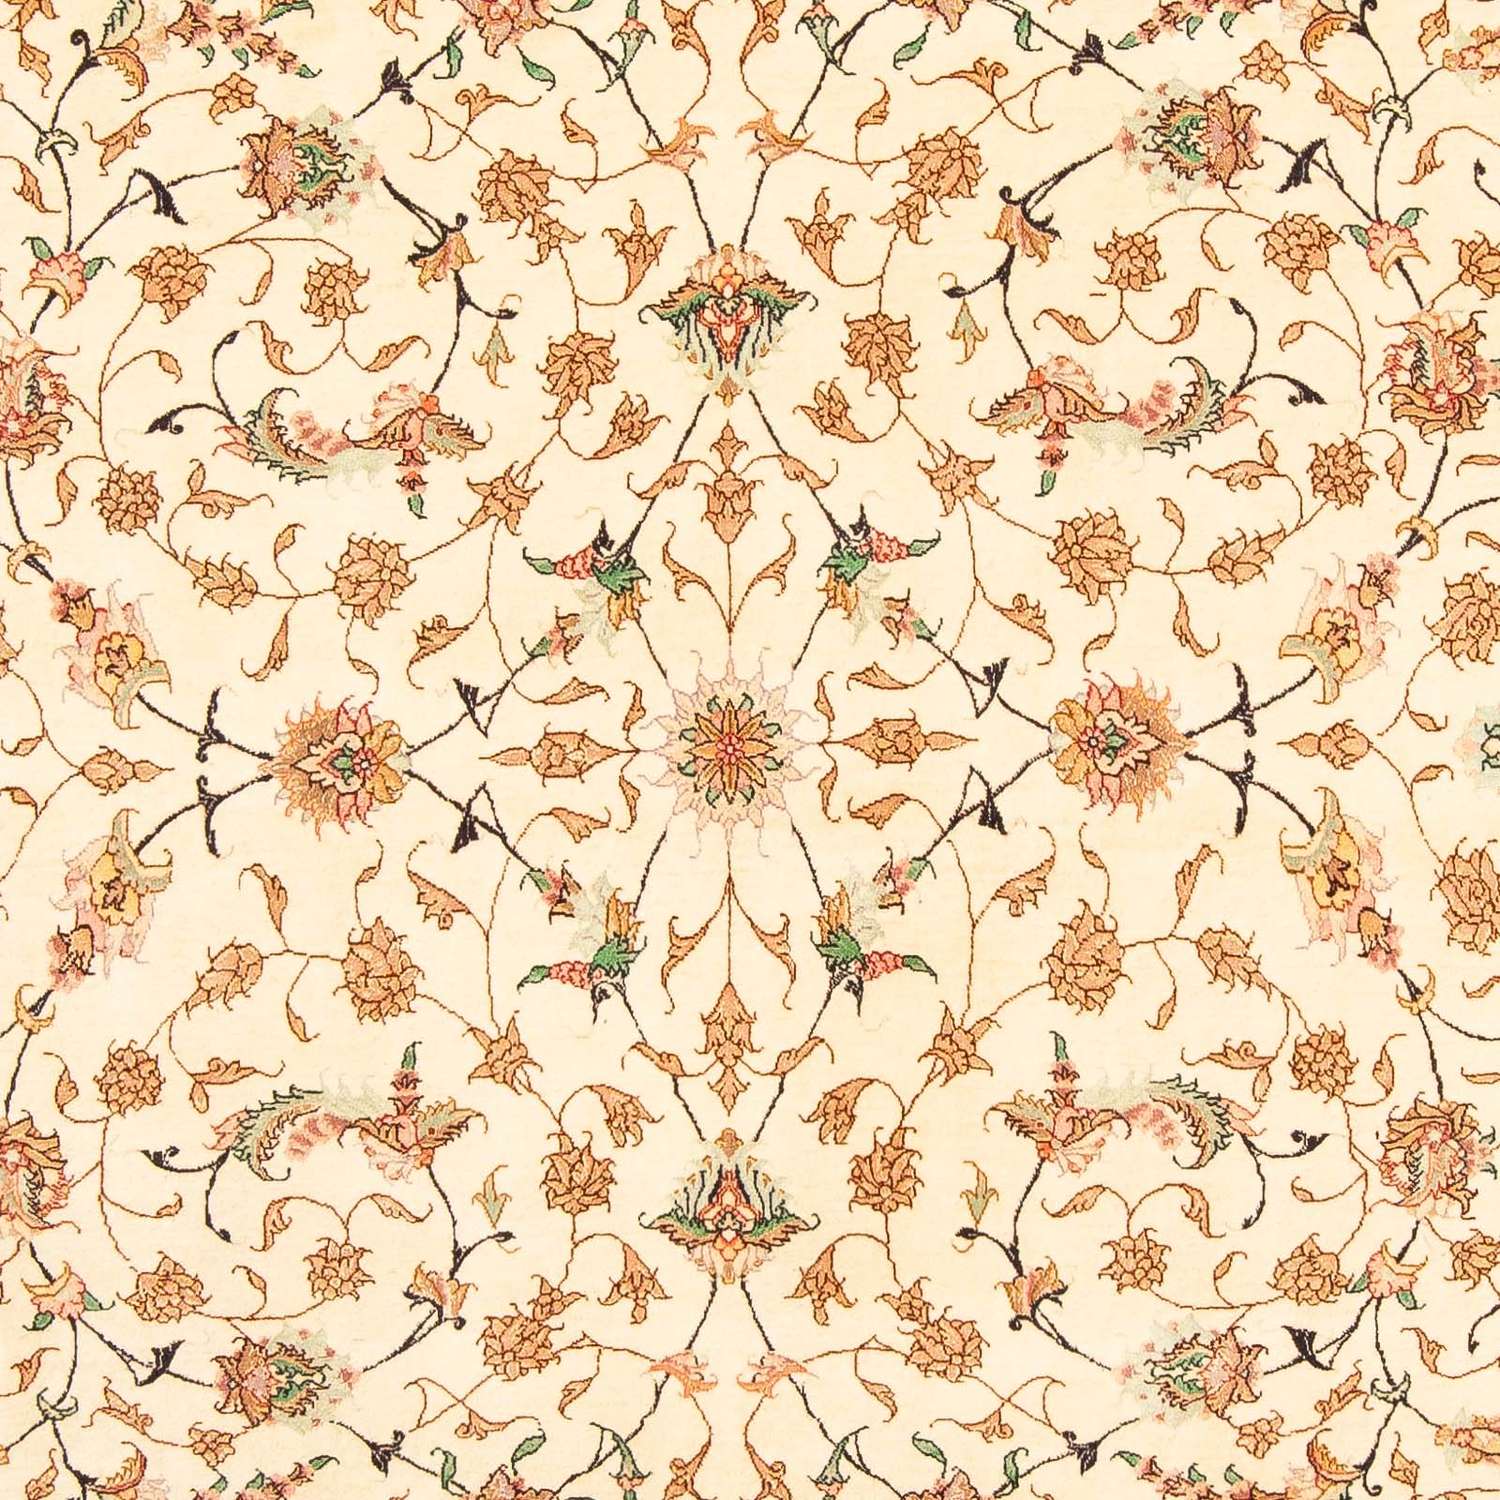 Persisk teppe - Tabriz - Royal - 281 x 201 cm - beige